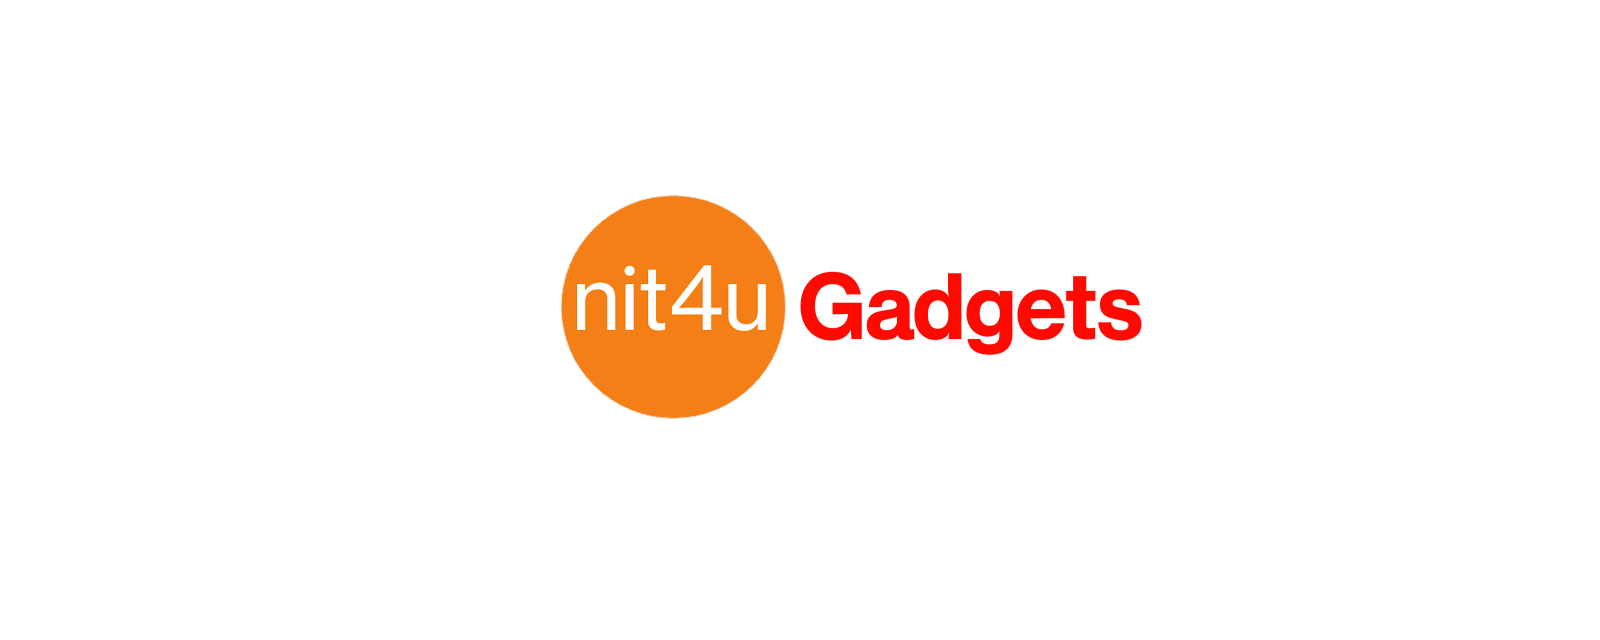 nit4u Gadgets